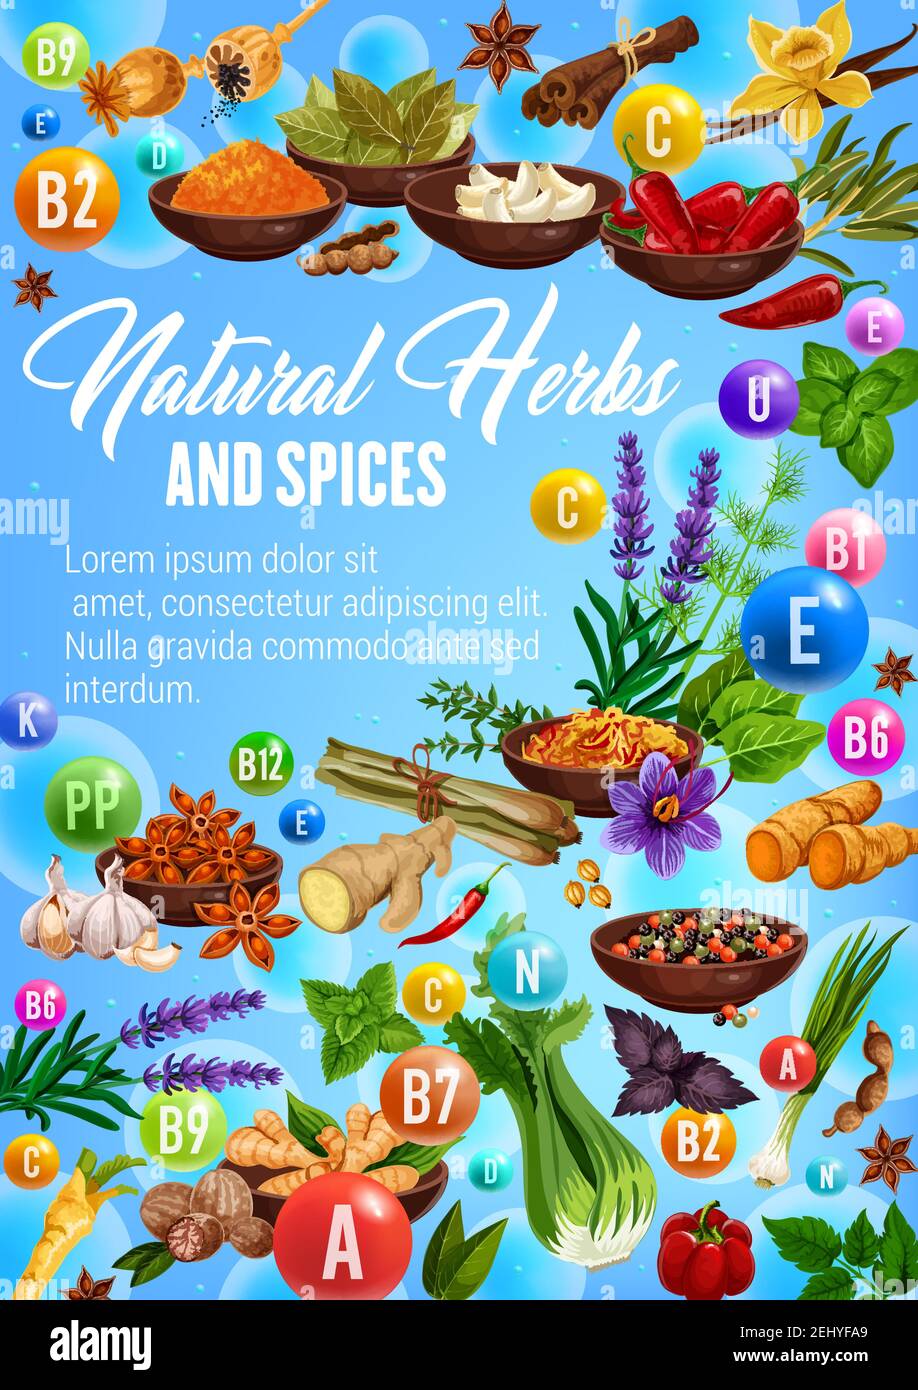 Spices, cooking herbs and herbal seasonings vitamins. Vector